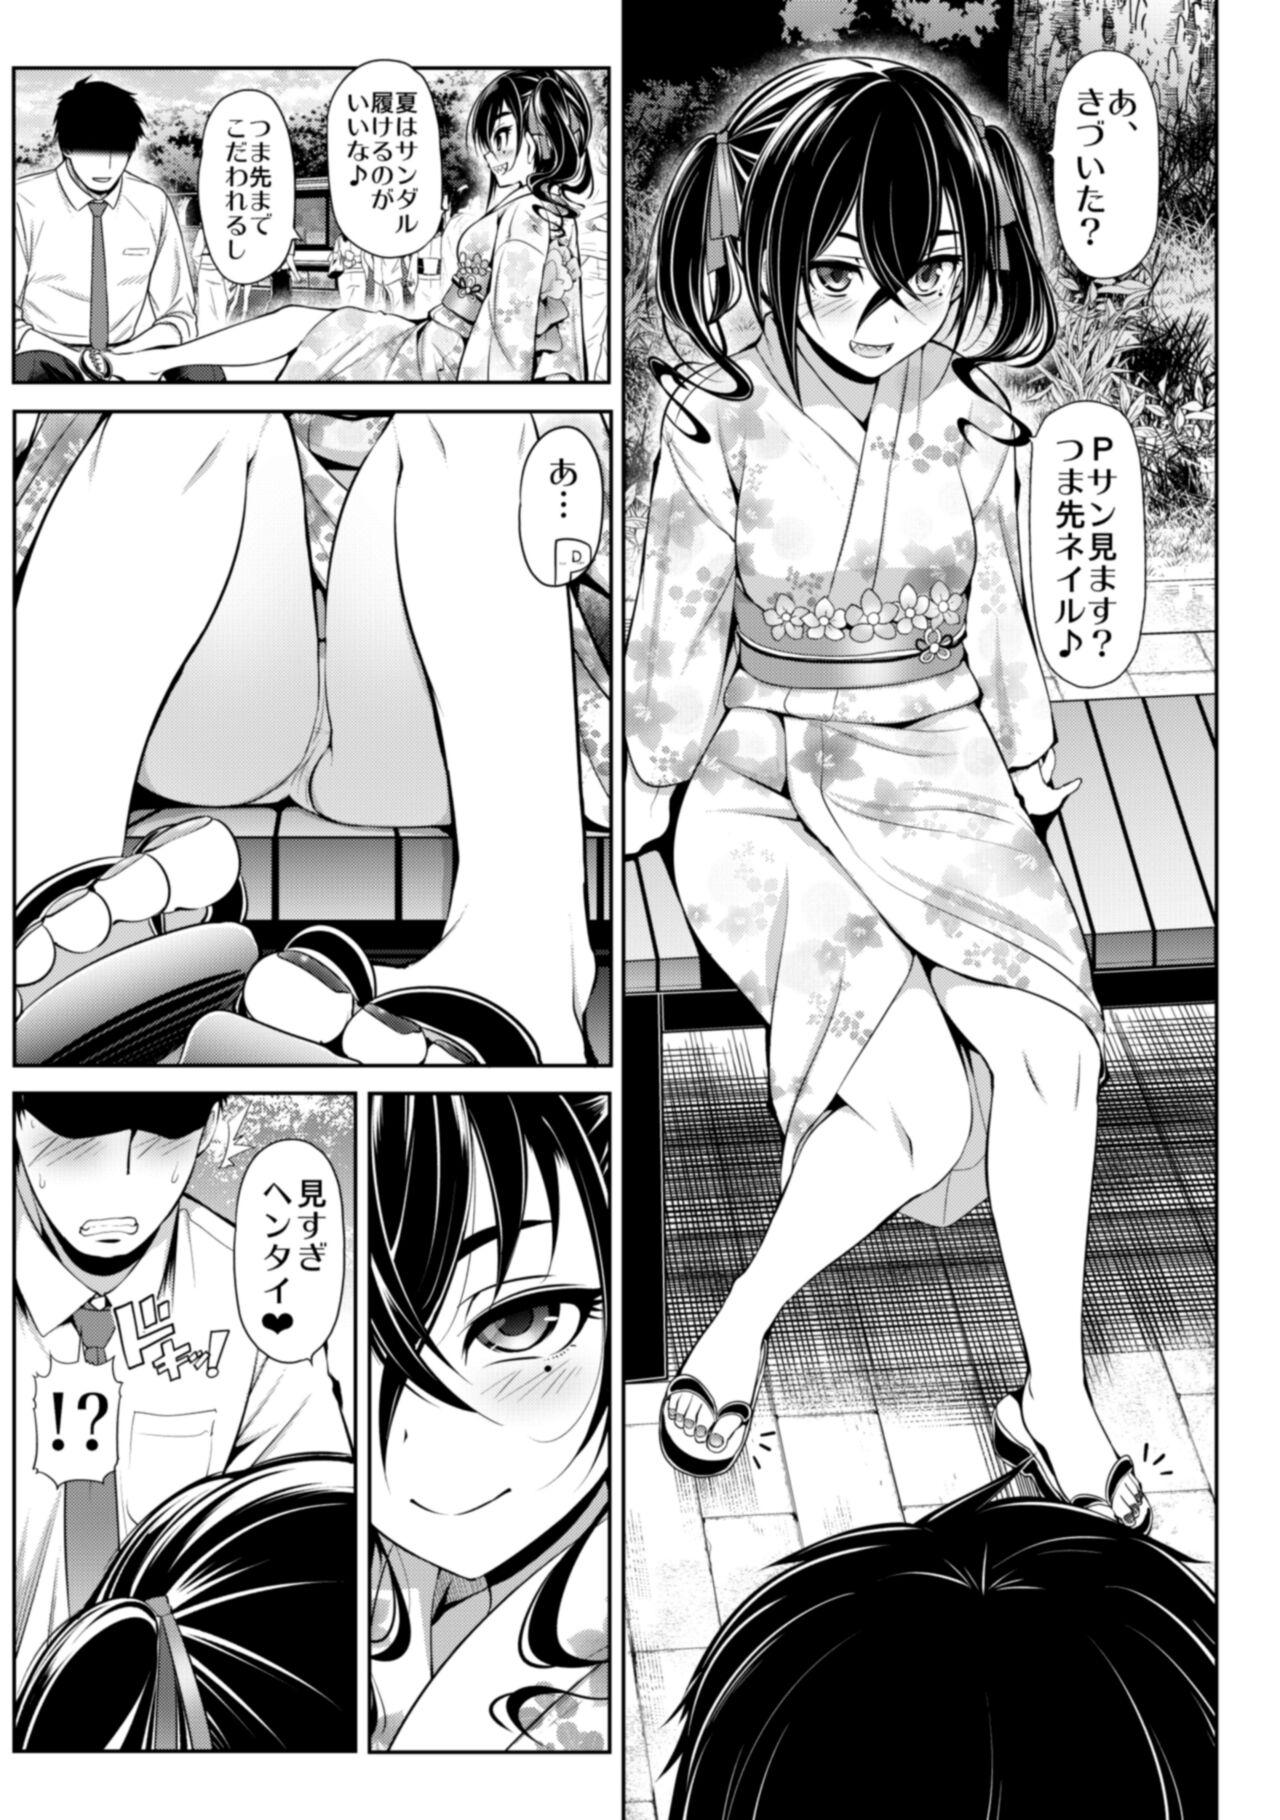 Spoon CINDERELLA Shinaido 999 Gentei Commu Manatsu no Idol Icha Love - The idolmaster Pounded - Page 9